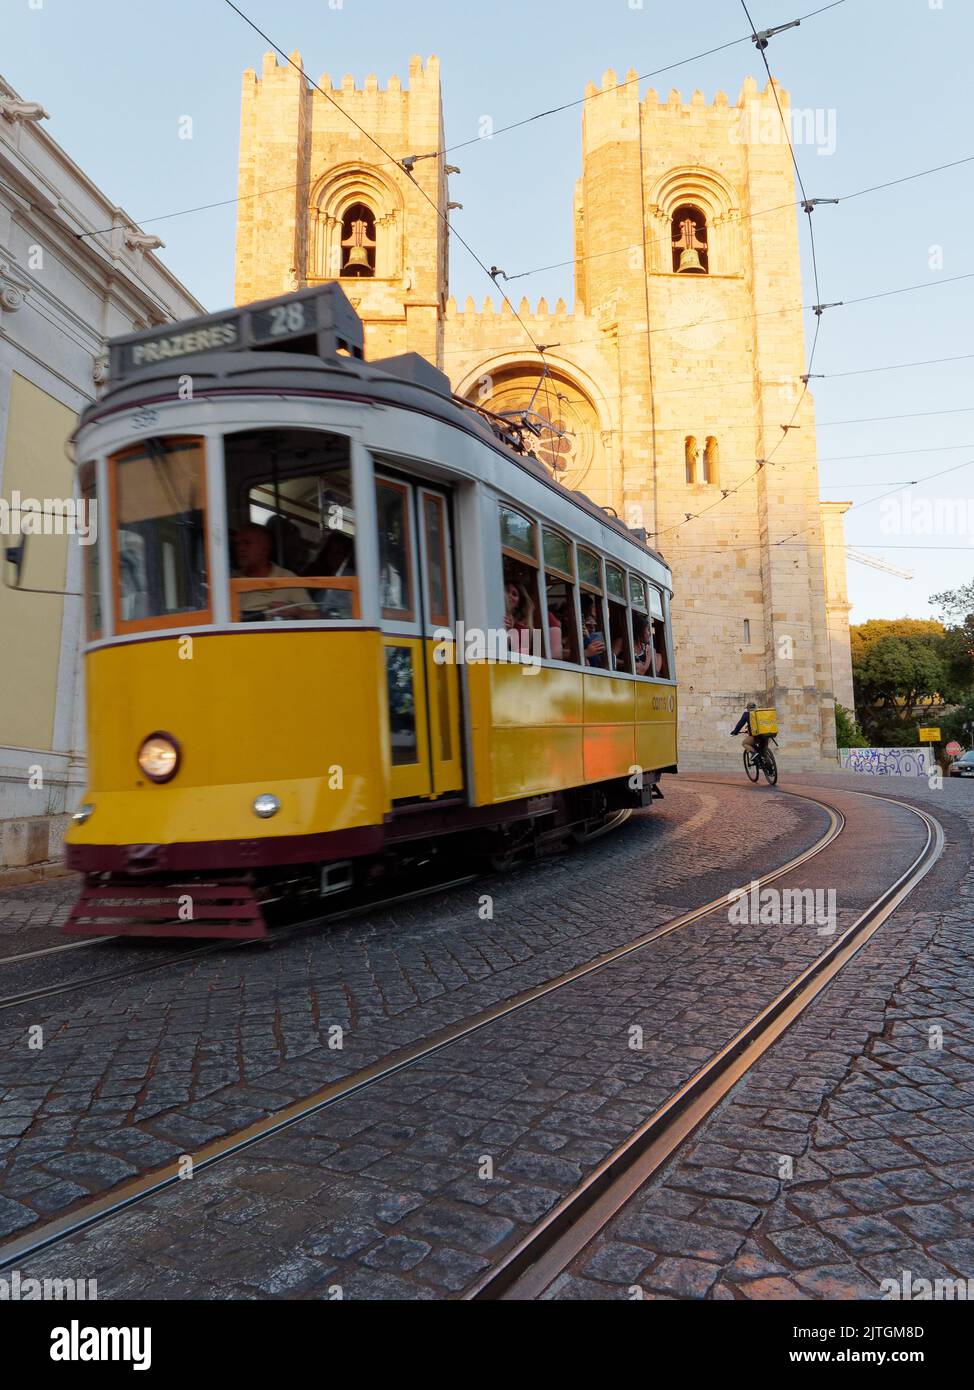 La cathédrale Saint Mary Major alias la cathédrale de Lisbonne (Sé de Lisboa) en tant que tramway jaune et cycliste de livraison passe un soir d'été. Banque D'Images